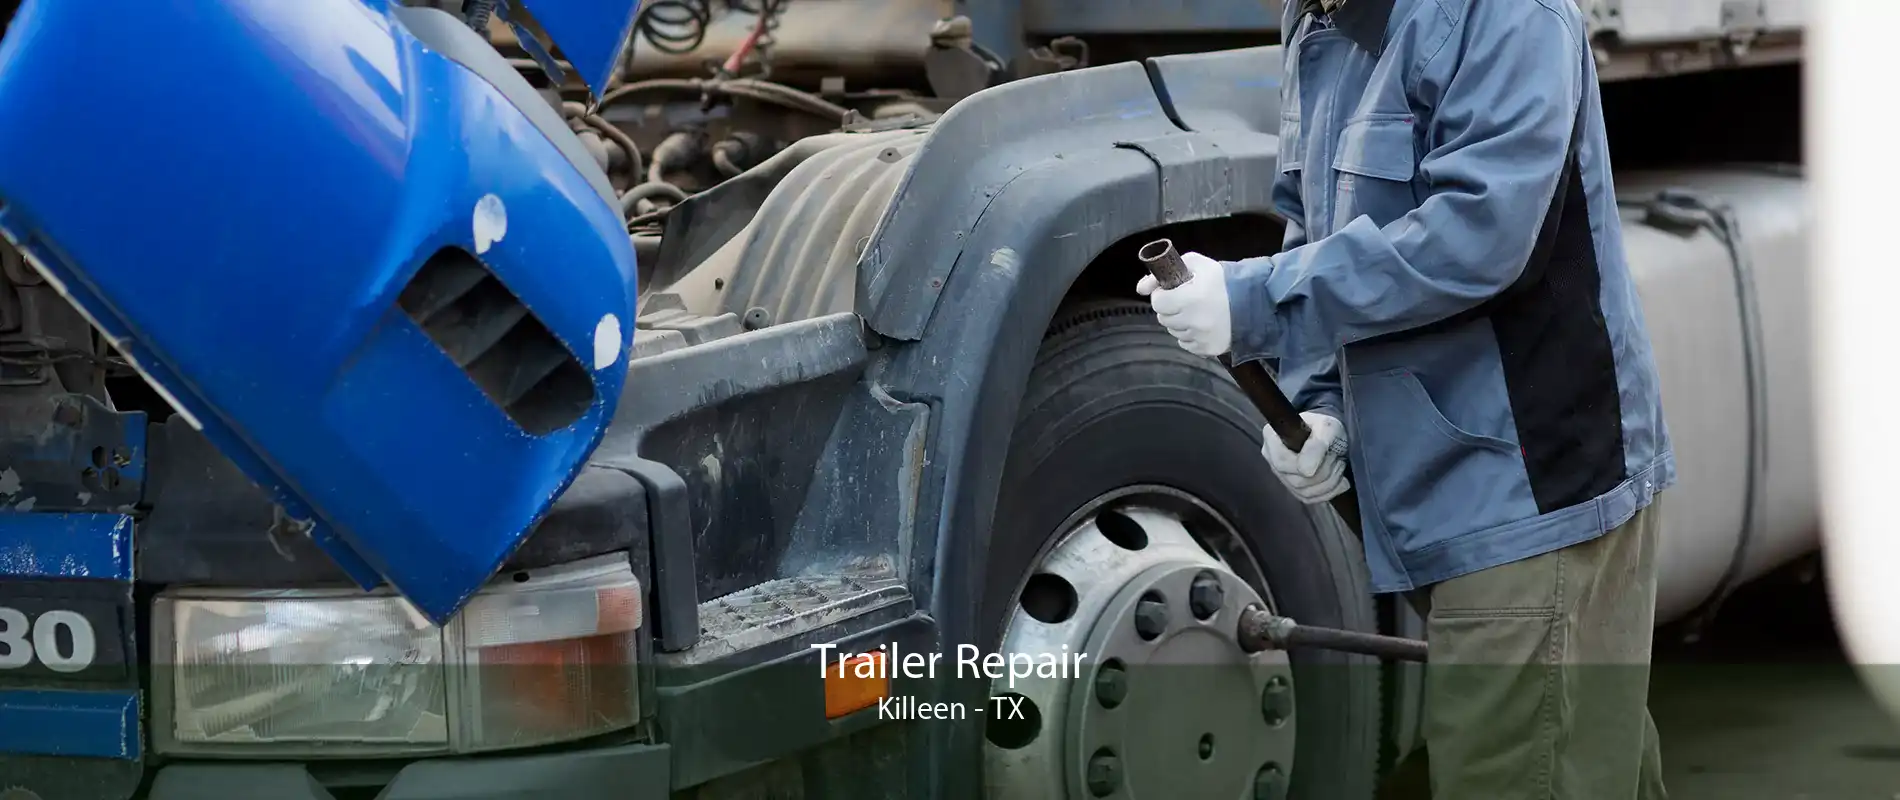 Trailer Repair Killeen - TX